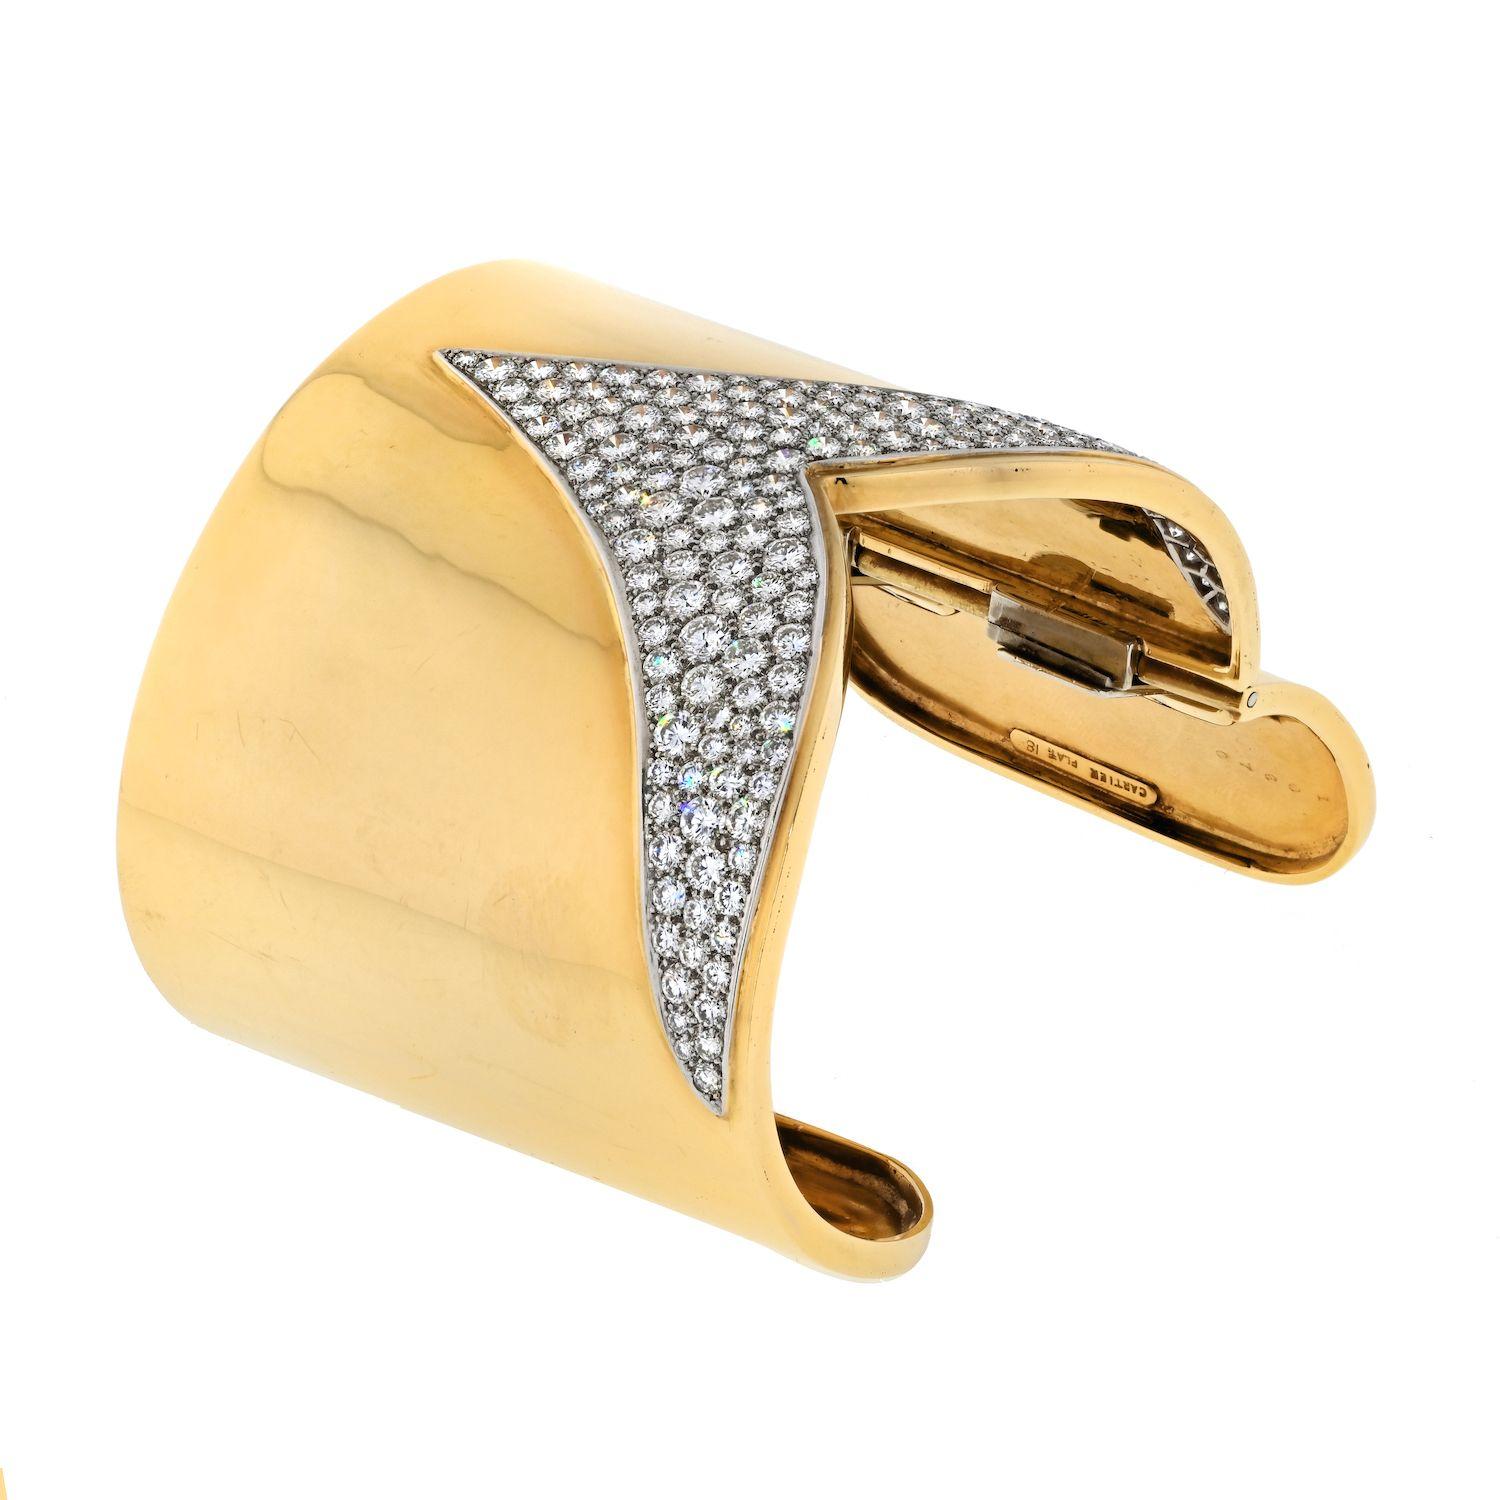 Das Estate Cartier 18K Gelbgold Diamond Cuff Bracelet ist der Inbegriff von Raffinesse und Luxus. Ein Meisterwerk, das zeitlose Eleganz mit unvergleichlicher Handwerkskunst verbindet. Das mit viel Liebe zum Detail gefertigte Armband hat eine